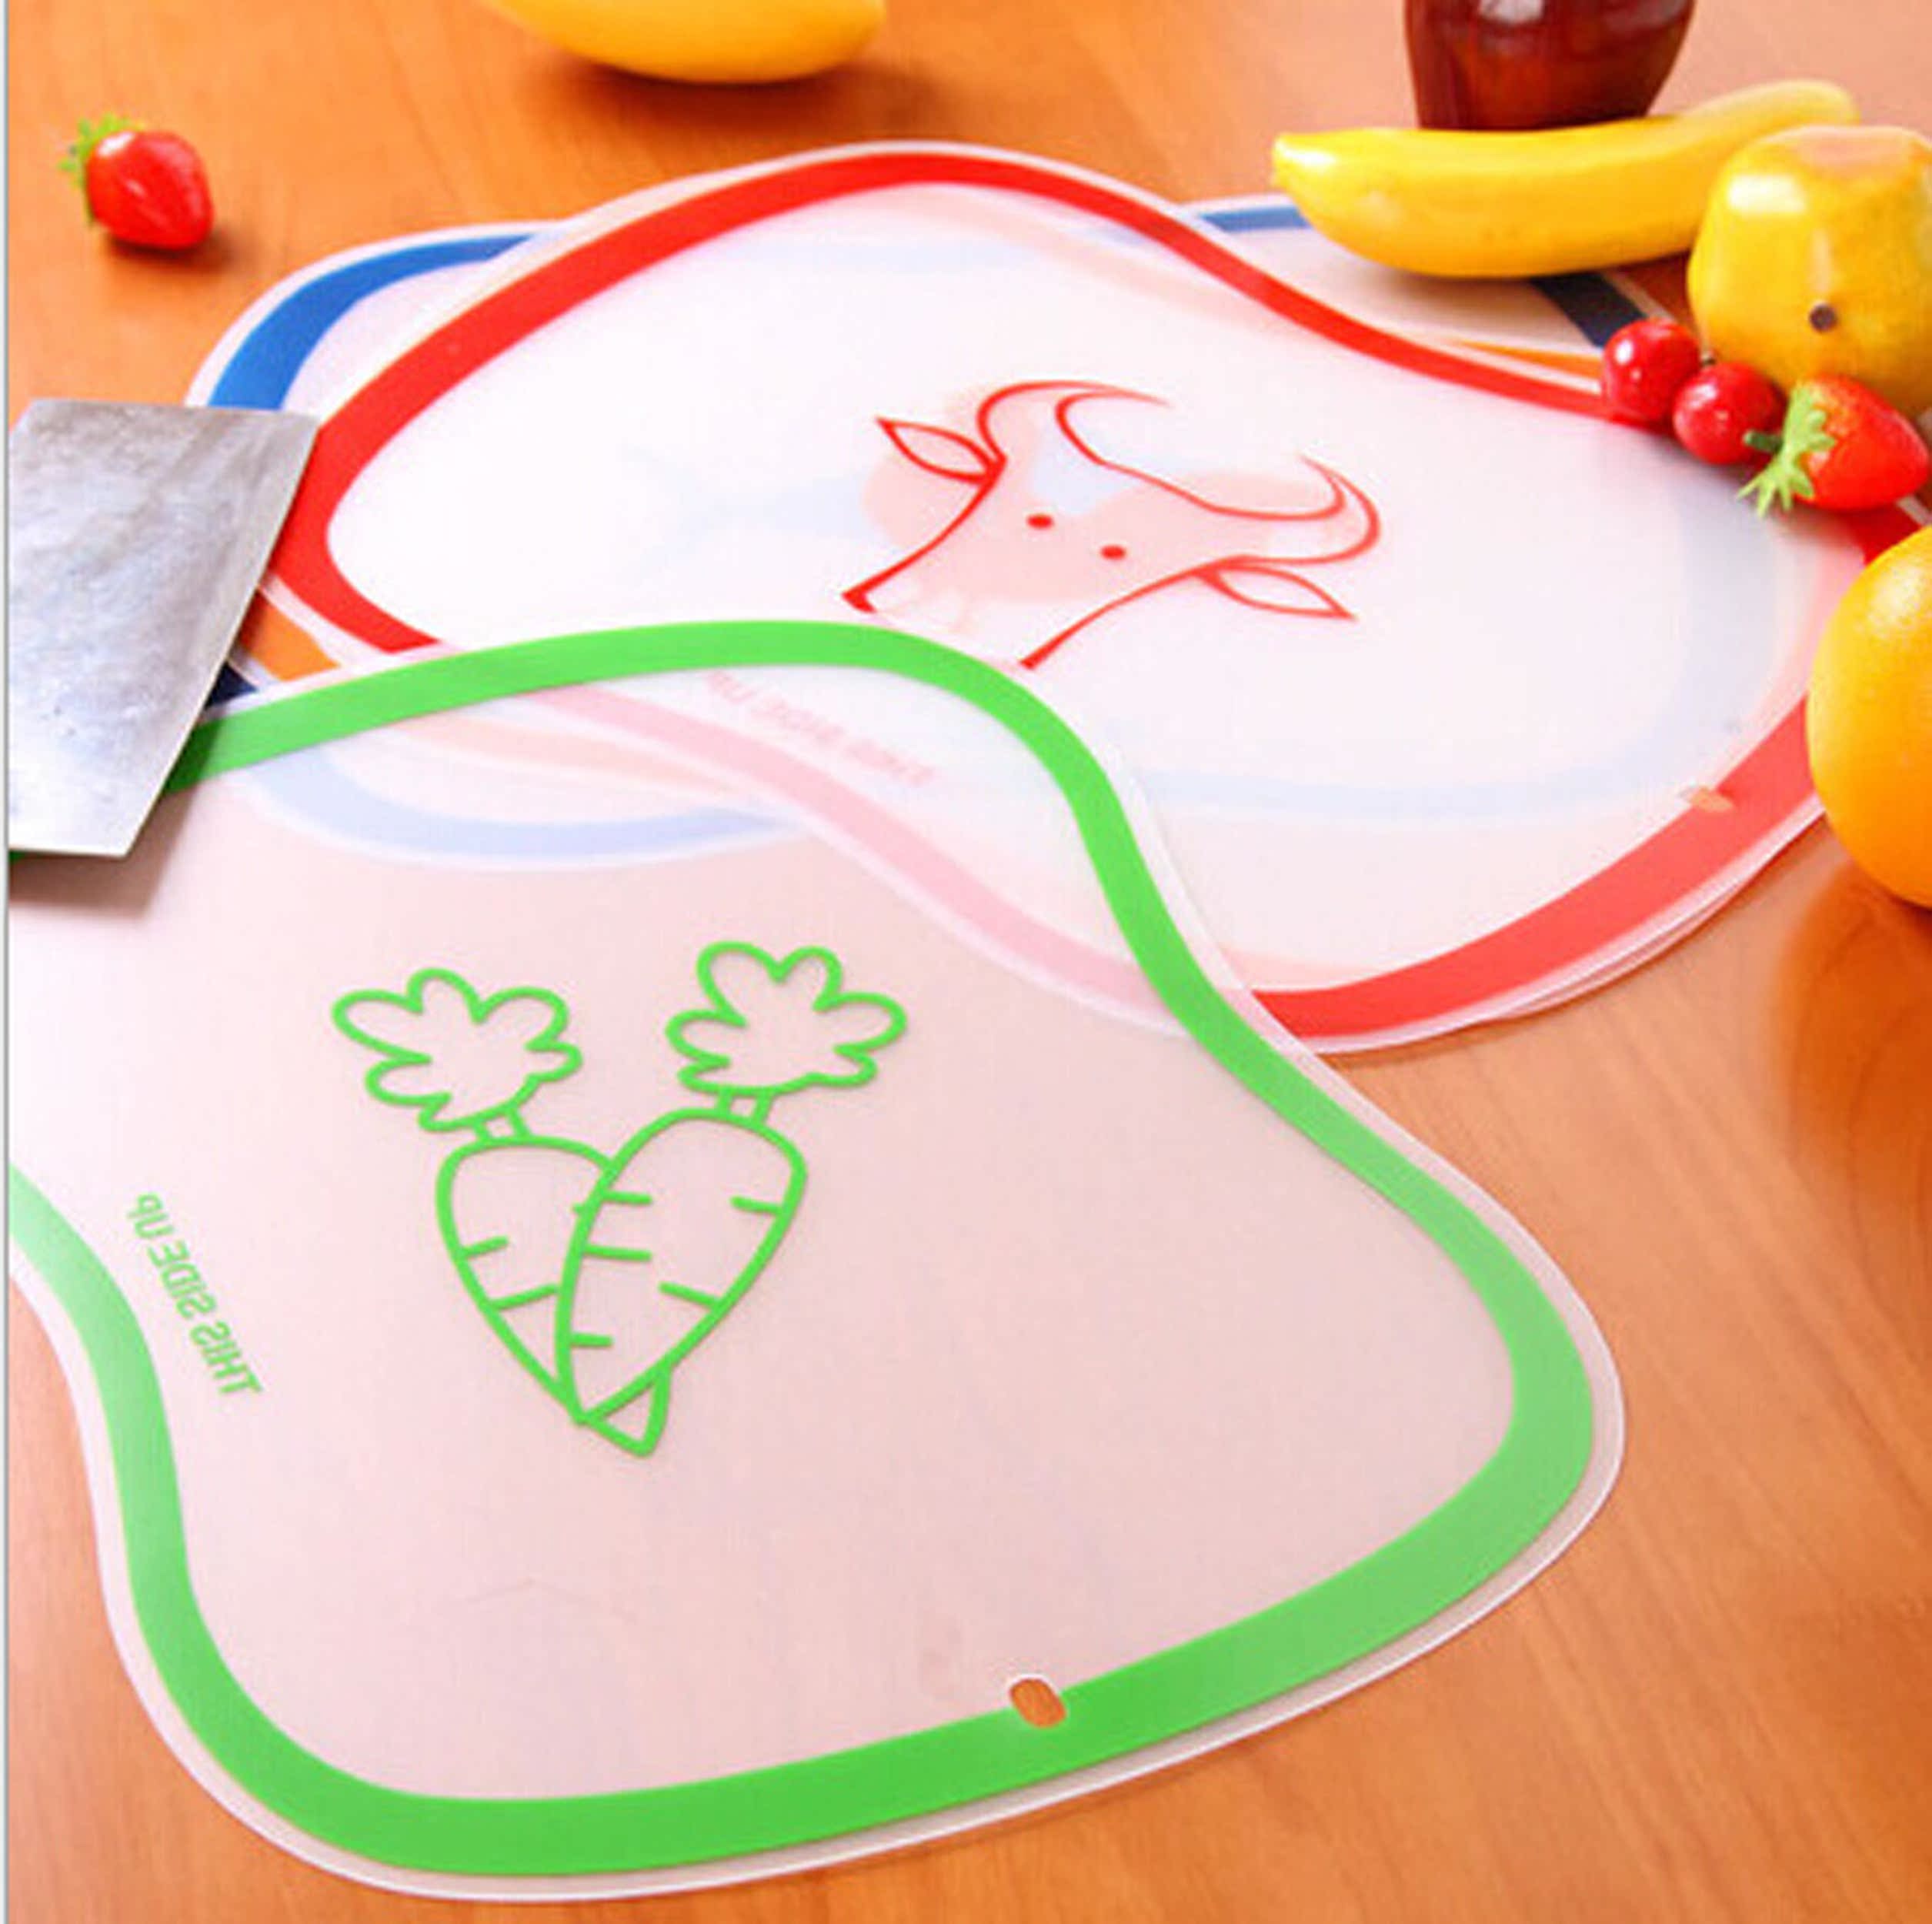 树脂磨砂小菜板 水果切板 透明切菜板抗菌防滑可弯曲 健康环保